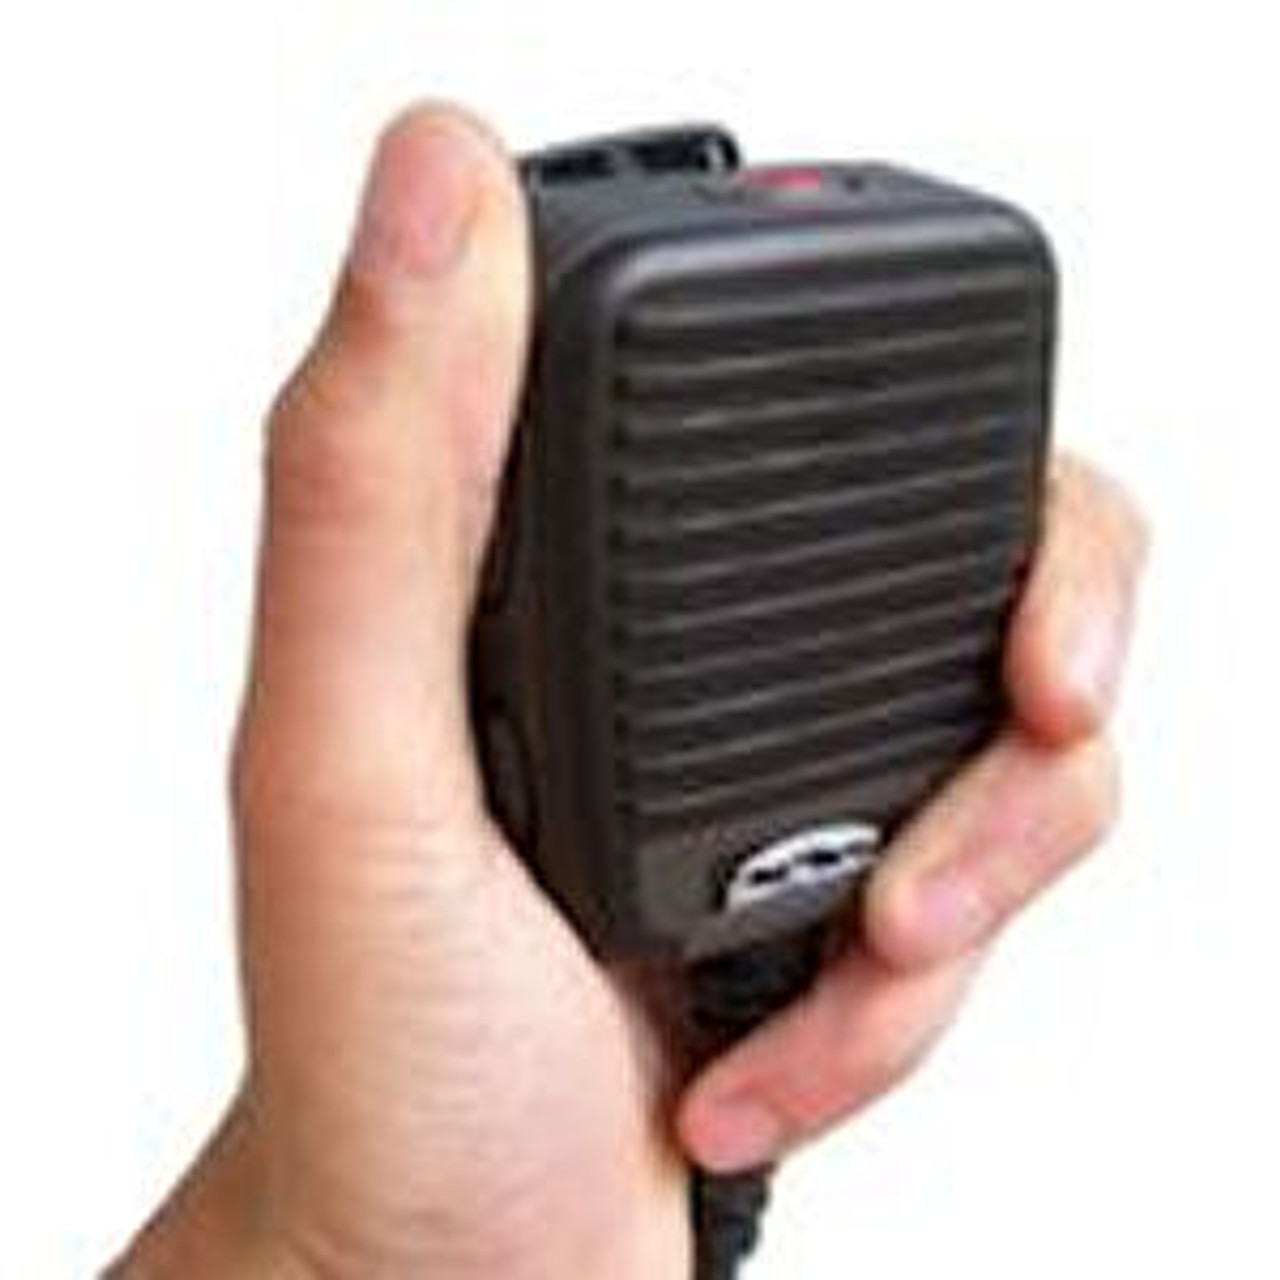 Motorola GP680 Noise Canceling Ruggedized Waterproof IP68 High Volume Speaker Mic